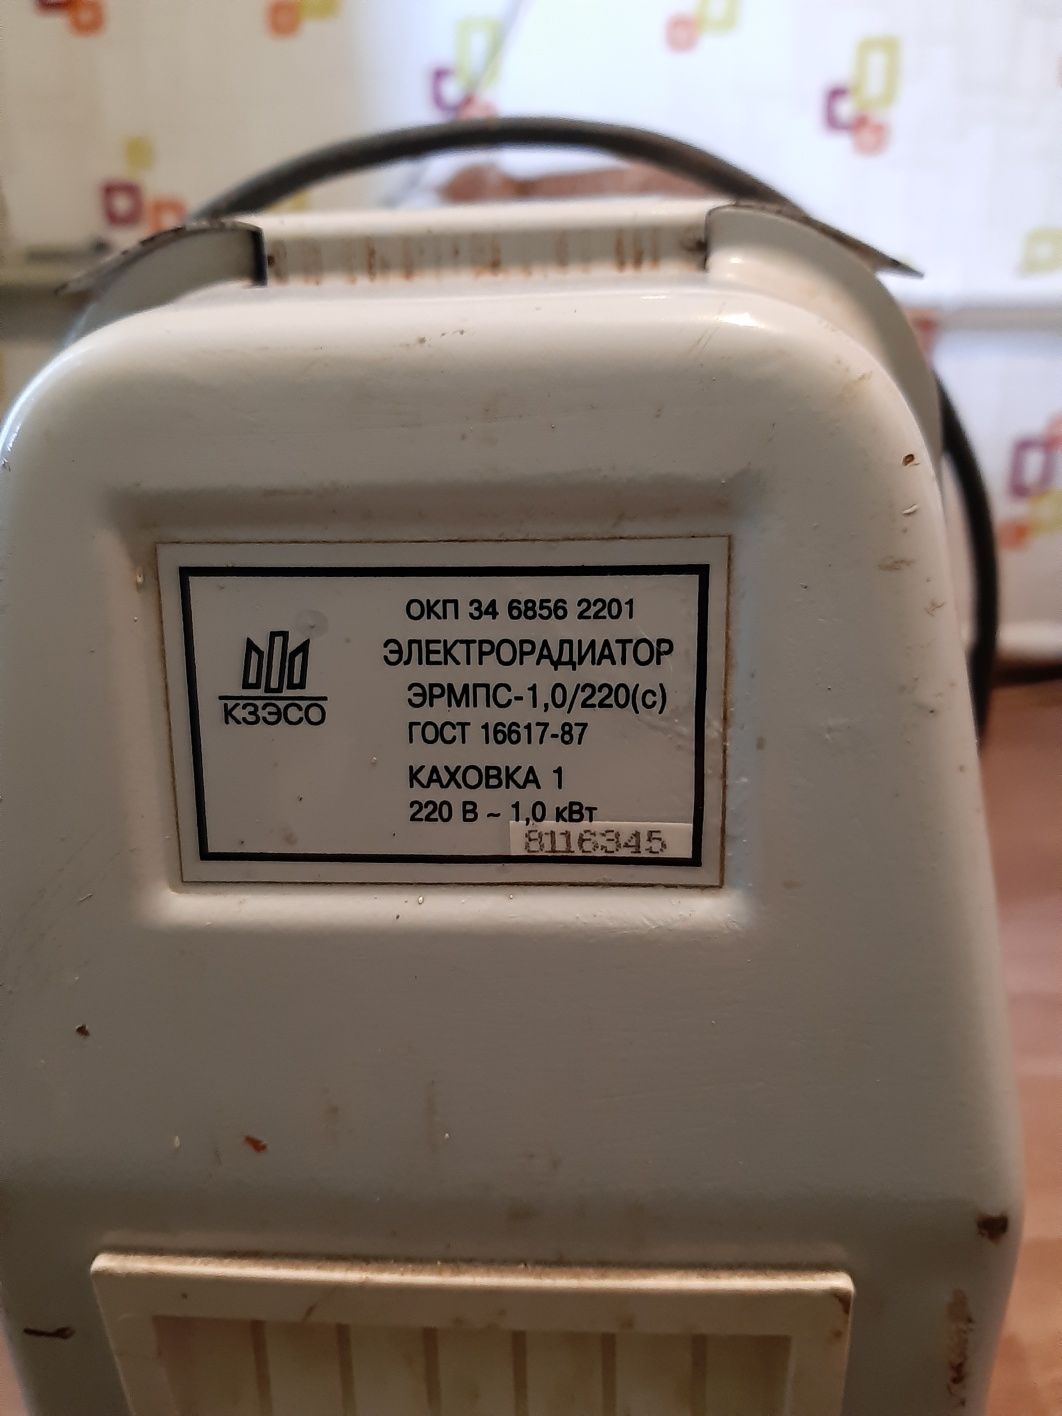 Продам радиатор масляный Каховка-1  в отличном состоянии